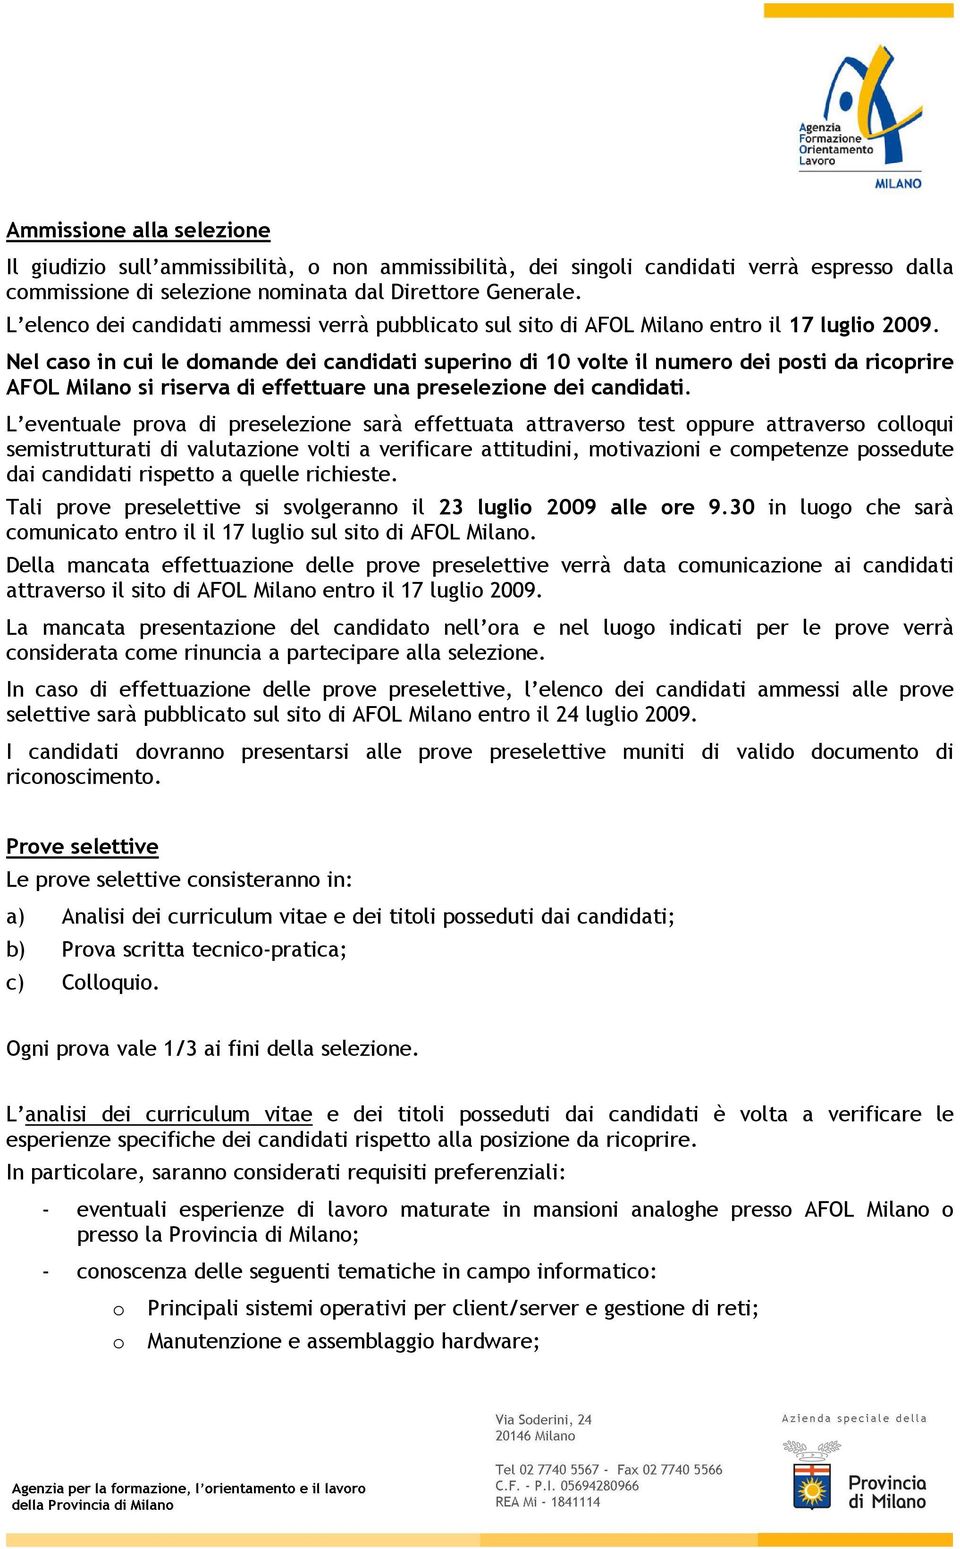 Nel caso in cui le domande dei candidati superino di 10 volte il numero dei posti da ricoprire AFOL Milano si riserva di effettuare una preselezione dei candidati.